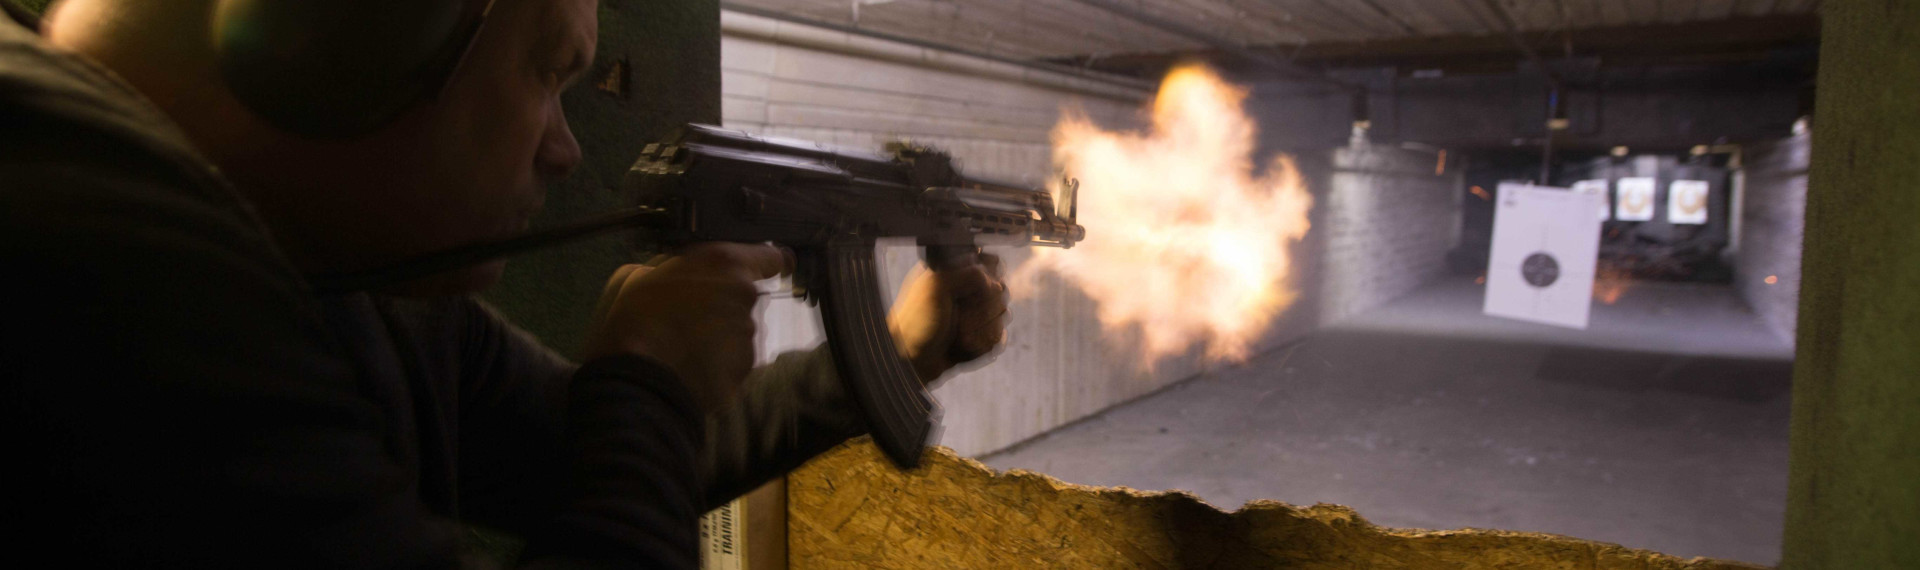 Kalaschnikow schießen Budapest | AK-47 Extrempaket | Pissup Reisen